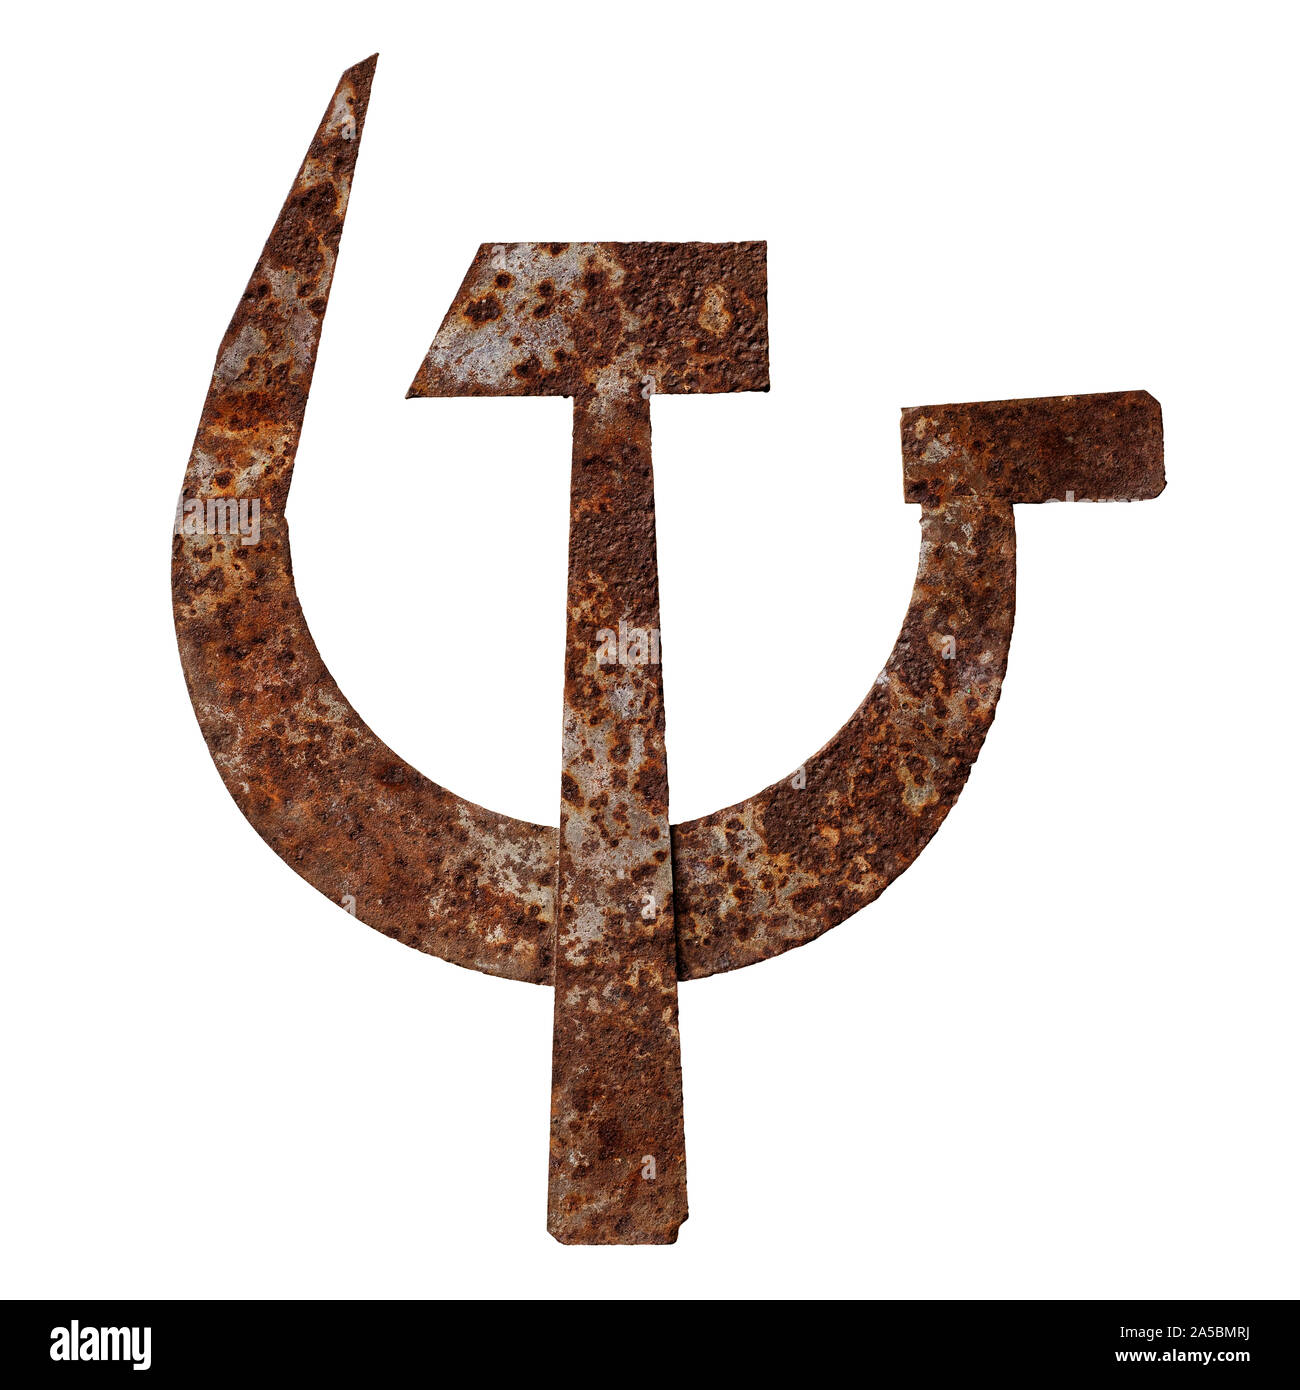 Objets isolés : traversé metal marteau et faucille, old rusty symbole de communisme, sur fond blanc Banque D'Images